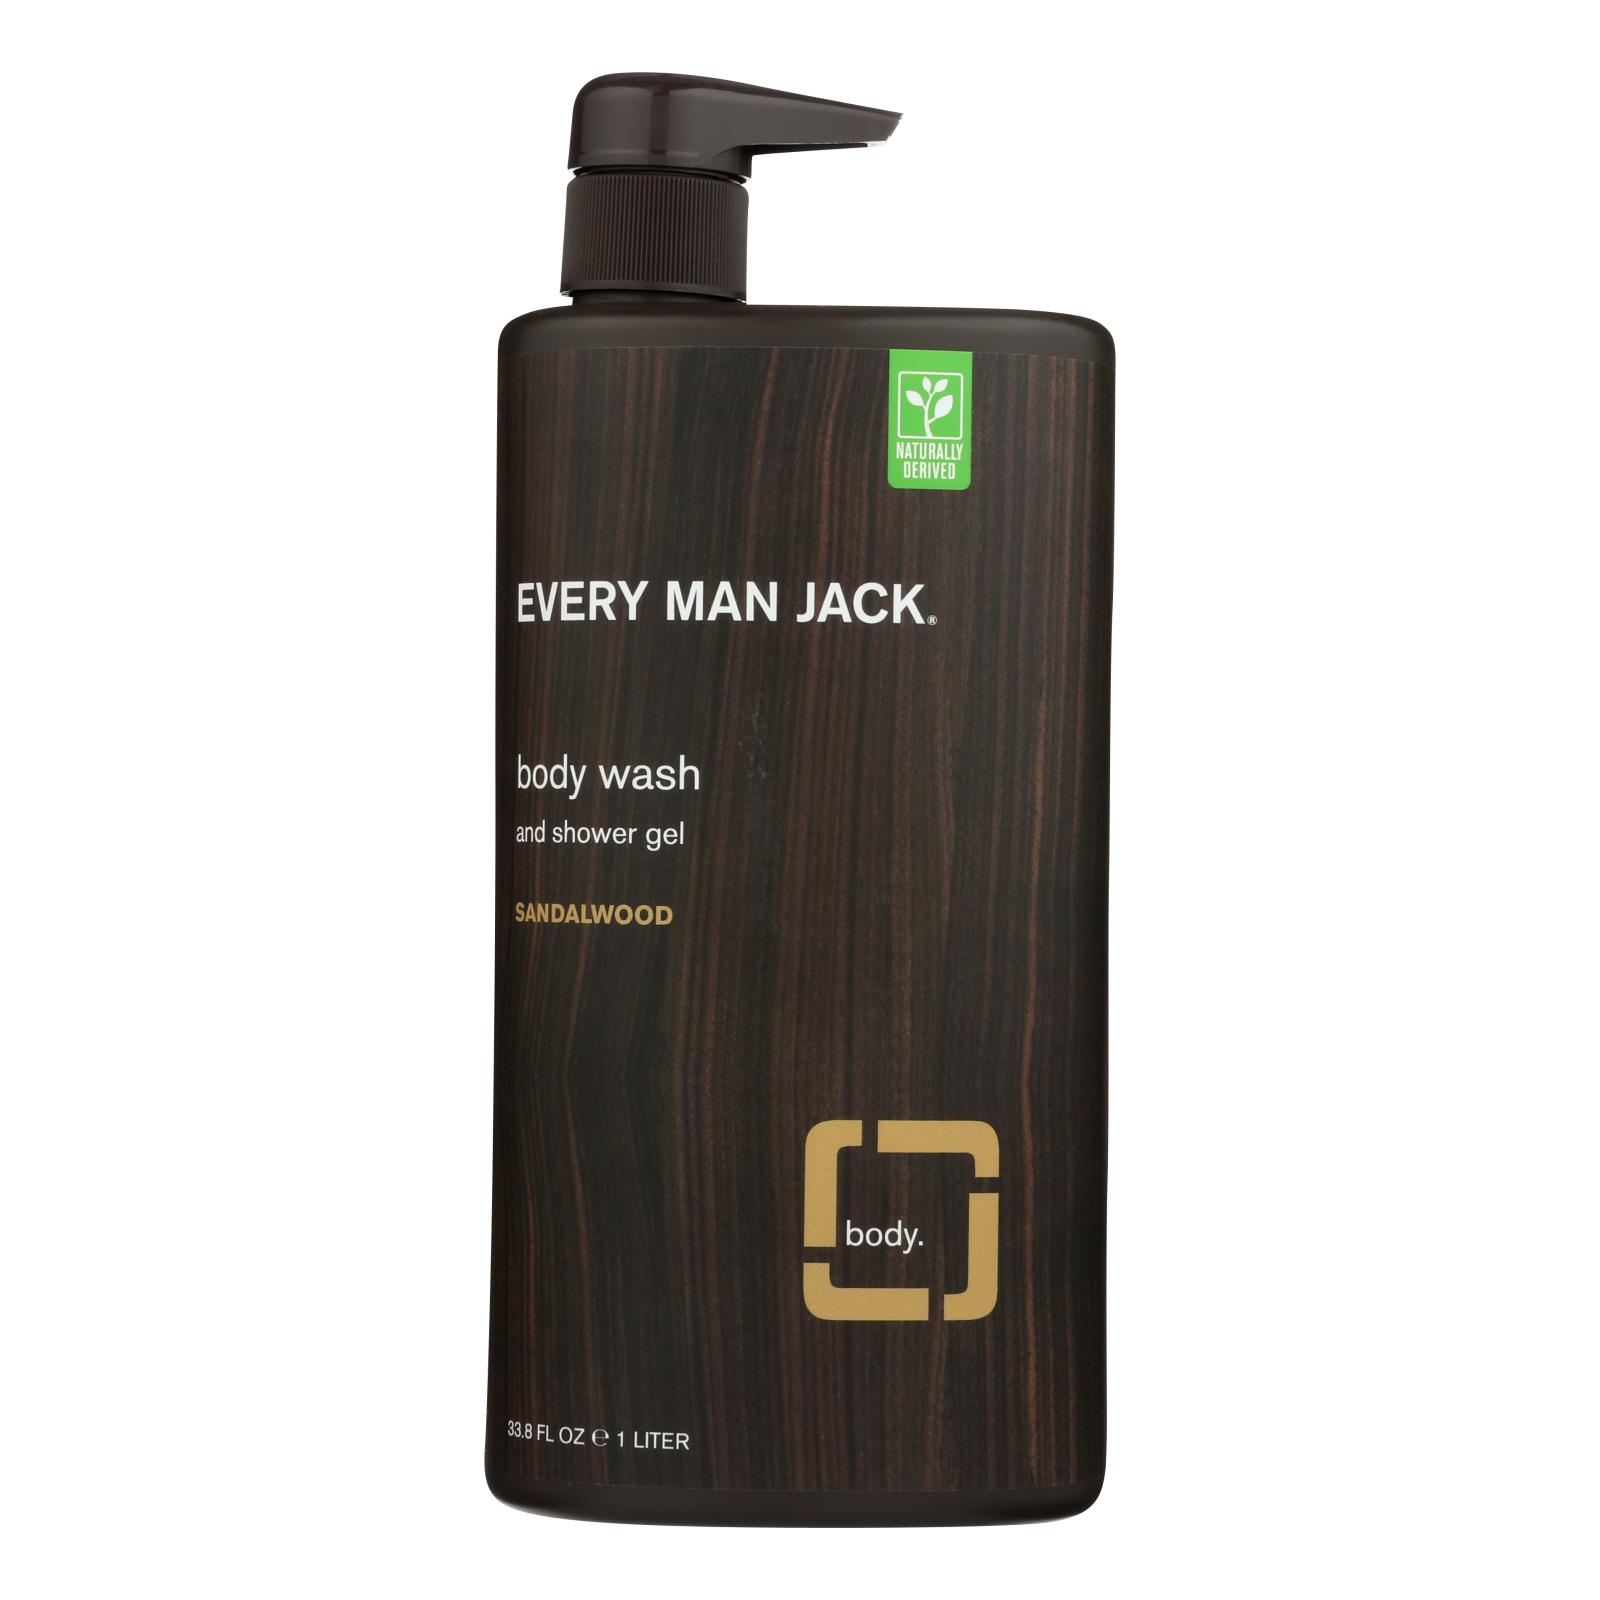 Every Man Jack Body Wash Sandalwood Body Wash - 1 Each - 33.8 fl oz.